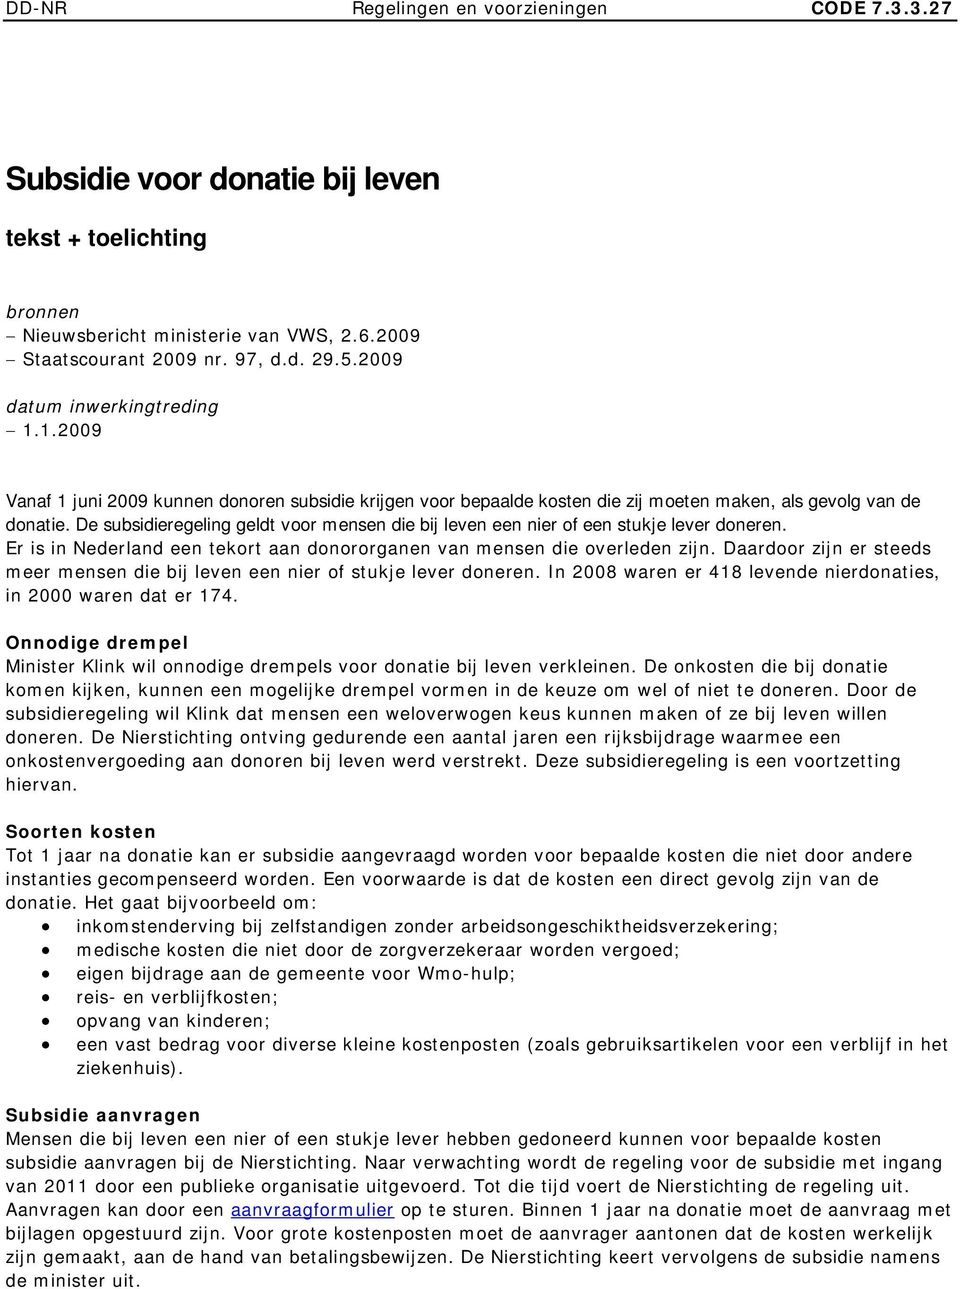 De subsidieregeling geldt voor mensen die bij leven een nier of een stukje lever doneren. Er is in Nederland een tekort aan donororganen van mensen die overleden zijn.